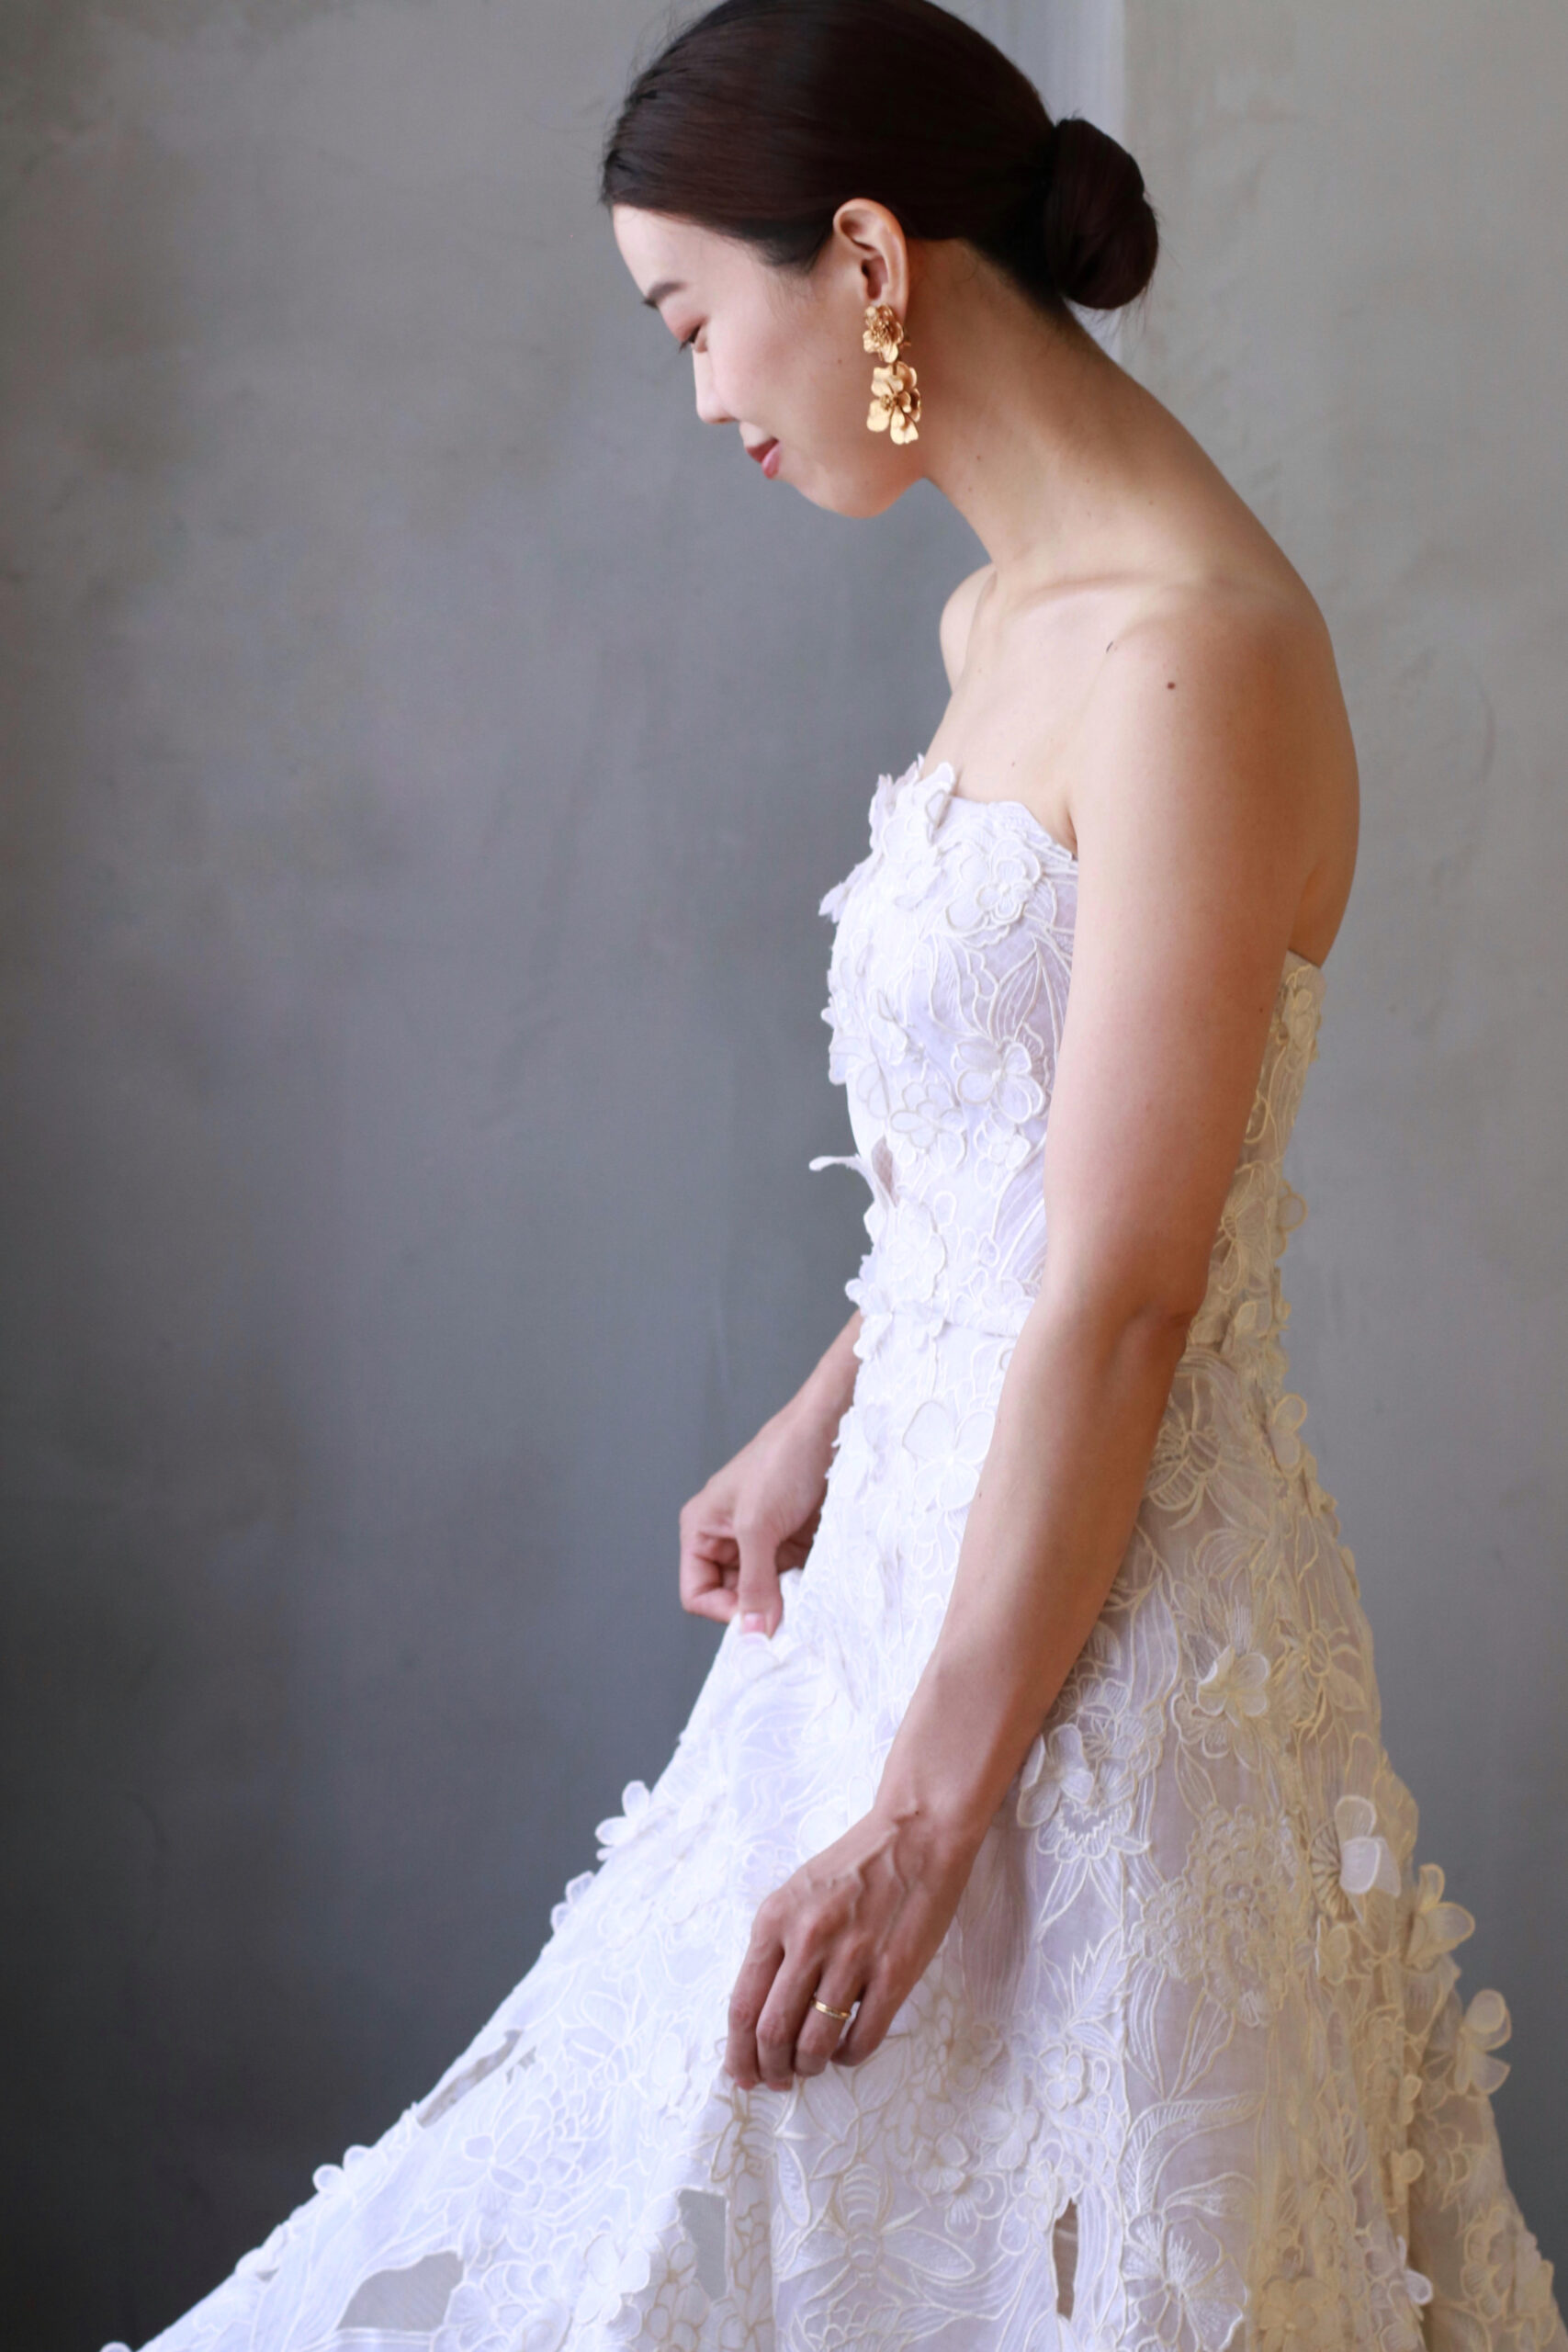 トリートドレッシングがおすすめする東京エリアの花嫁にお召いただきたい、Oscar de la Renta(オスカー デ ラ レンタ)の新作ウェディングドレスのコーディネートのご紹介